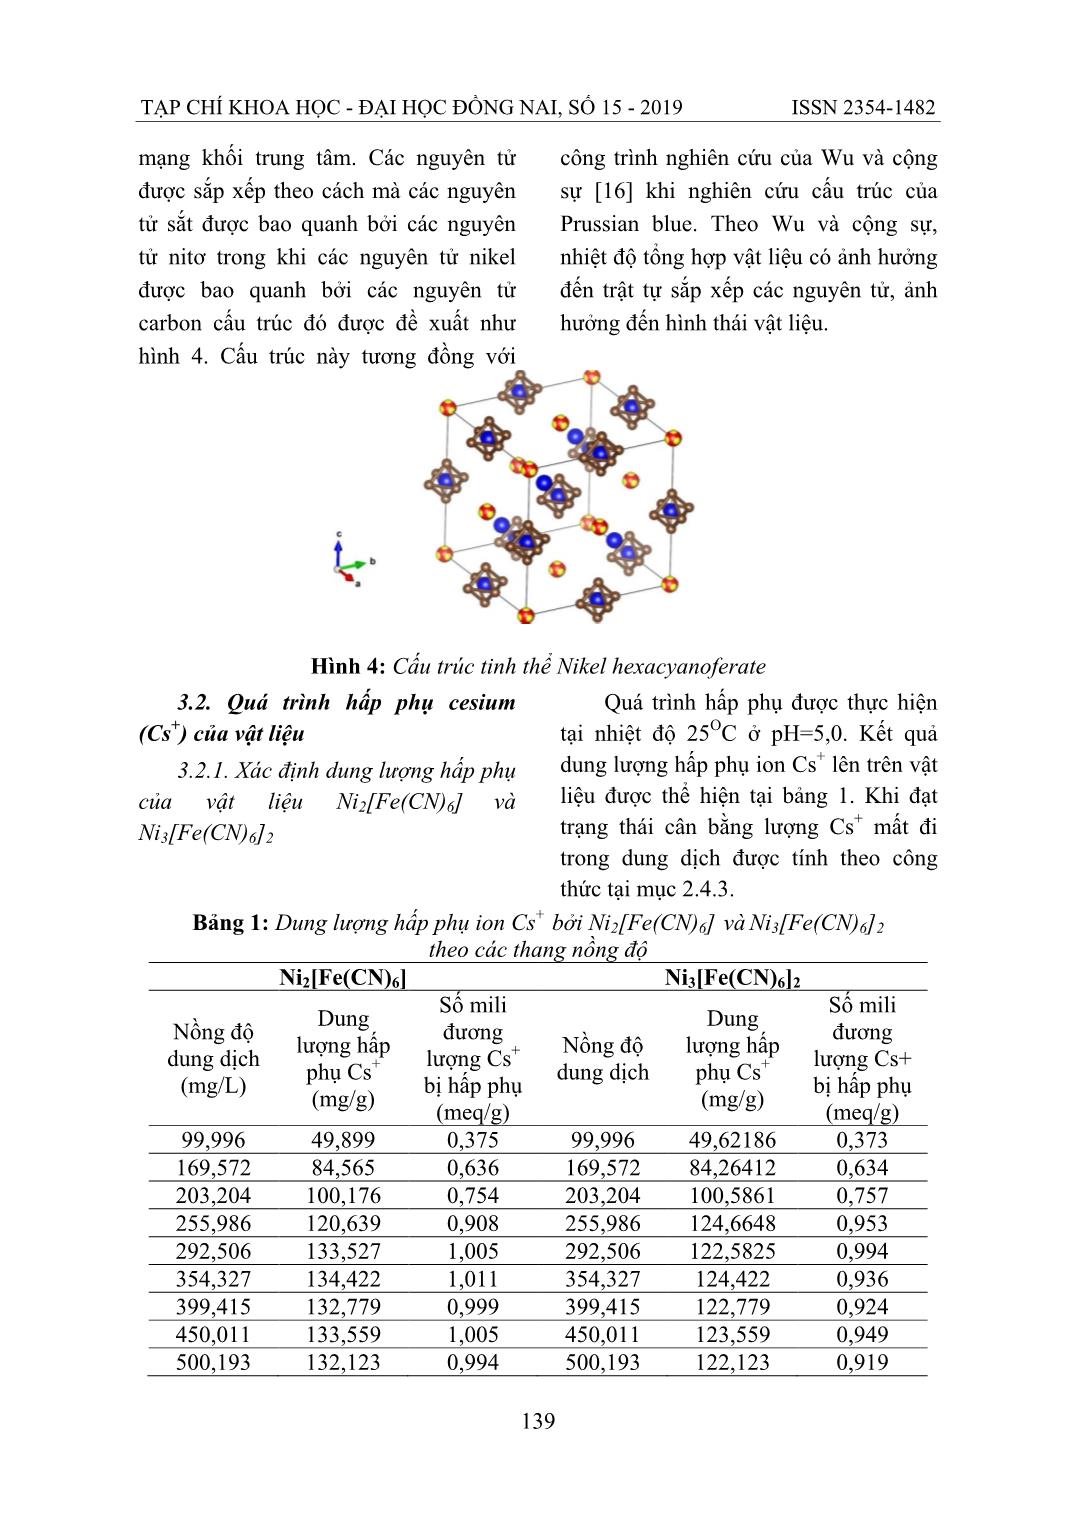 Nghiên cứu quá trình hấp phụ Cs+ bởi vật liệu Nano Ni2[Fe(CN)6] và Ni3[Fe(CN)6]2 trang 7